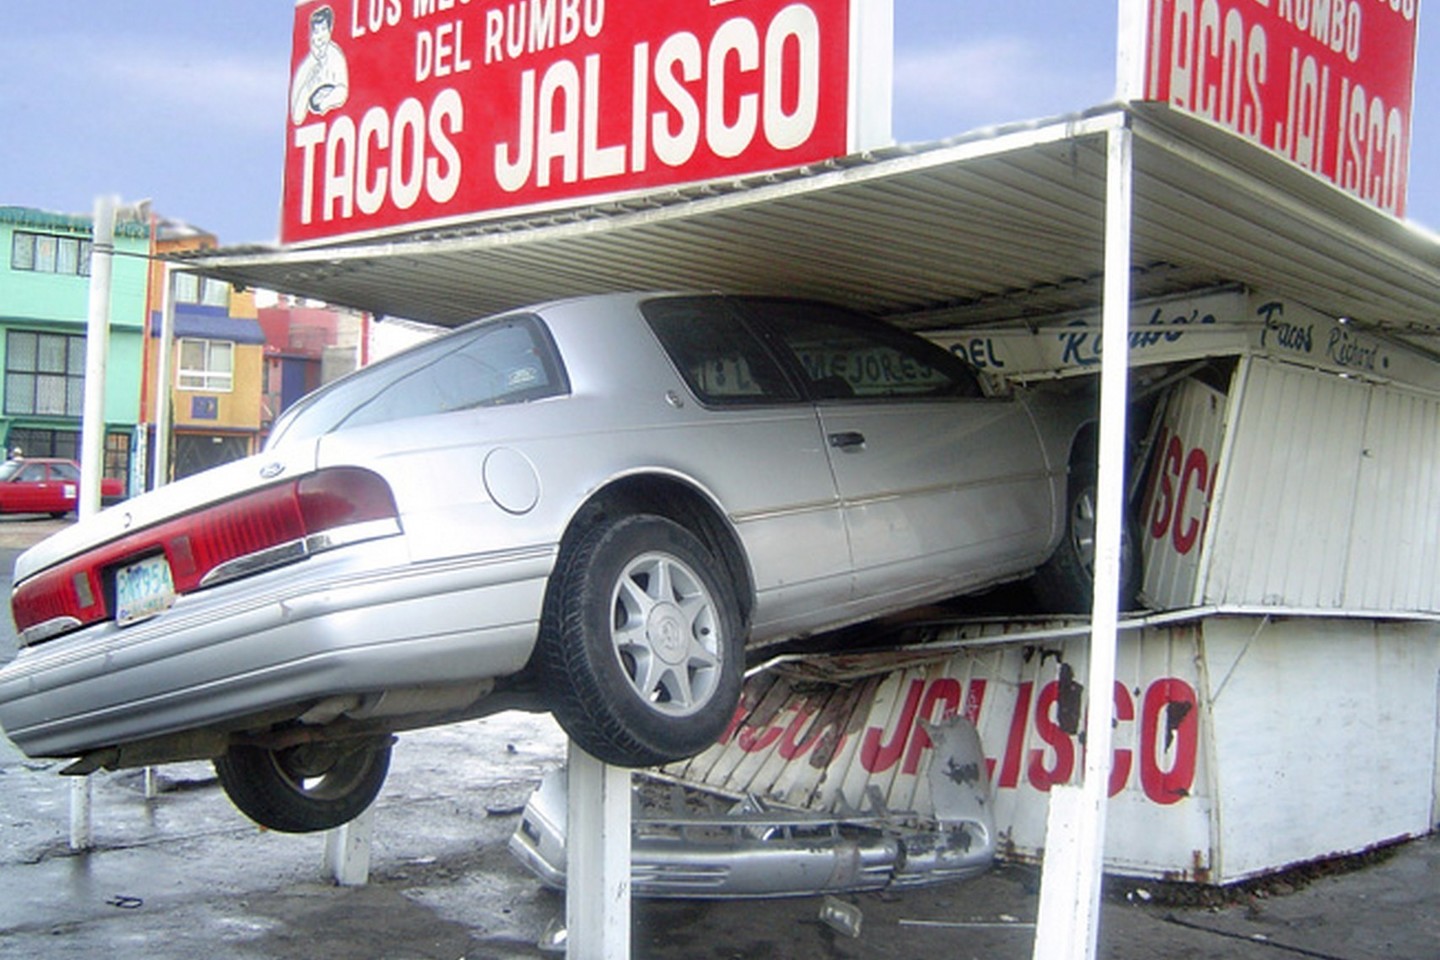 Beprotiškiausios automobilių avarijos nustebins ir visko mačiusius vairuotojus.<br>Omar Landeros/Flickr.com nuotr.